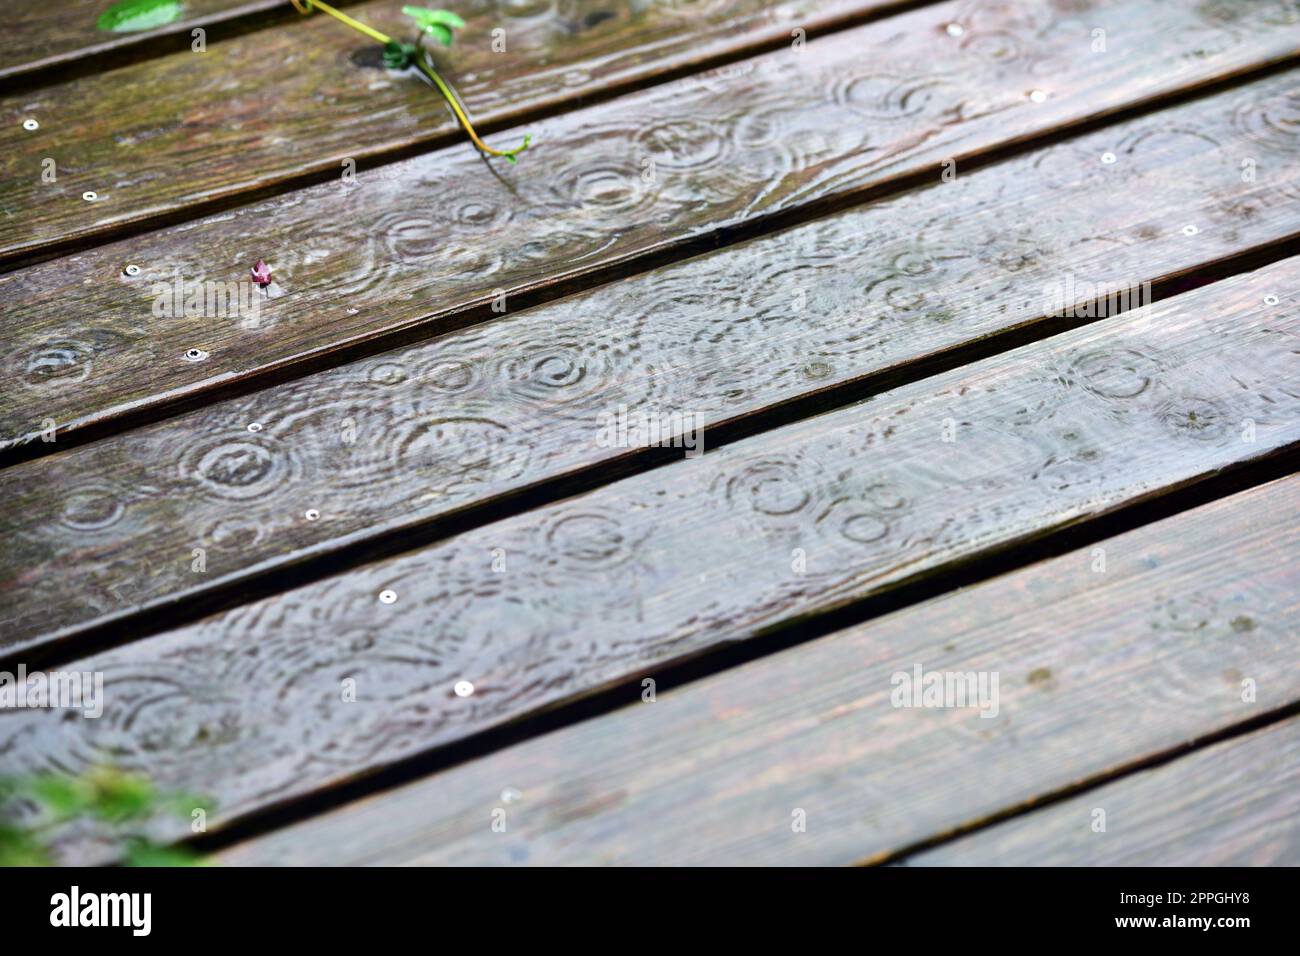 Regen auf einer Holzterrasse - Rain on a wooden deck Stock Photo